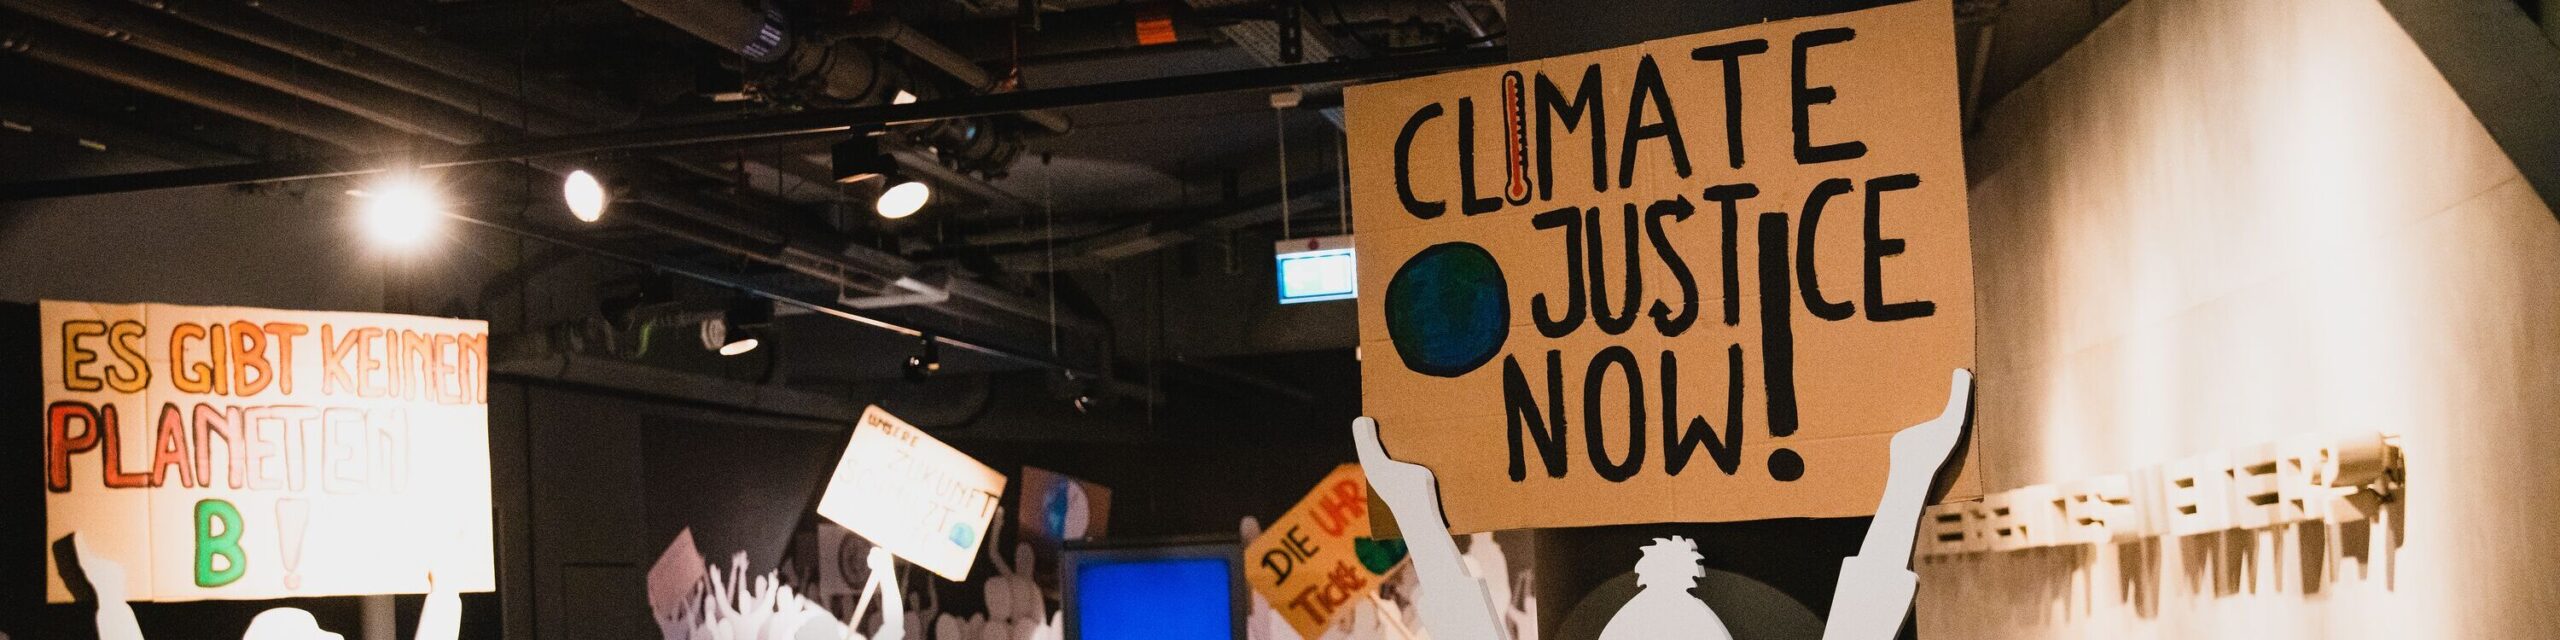 Transparente mit der Aufschrift Climate Justice Now! und Es gibt keinen Planet B